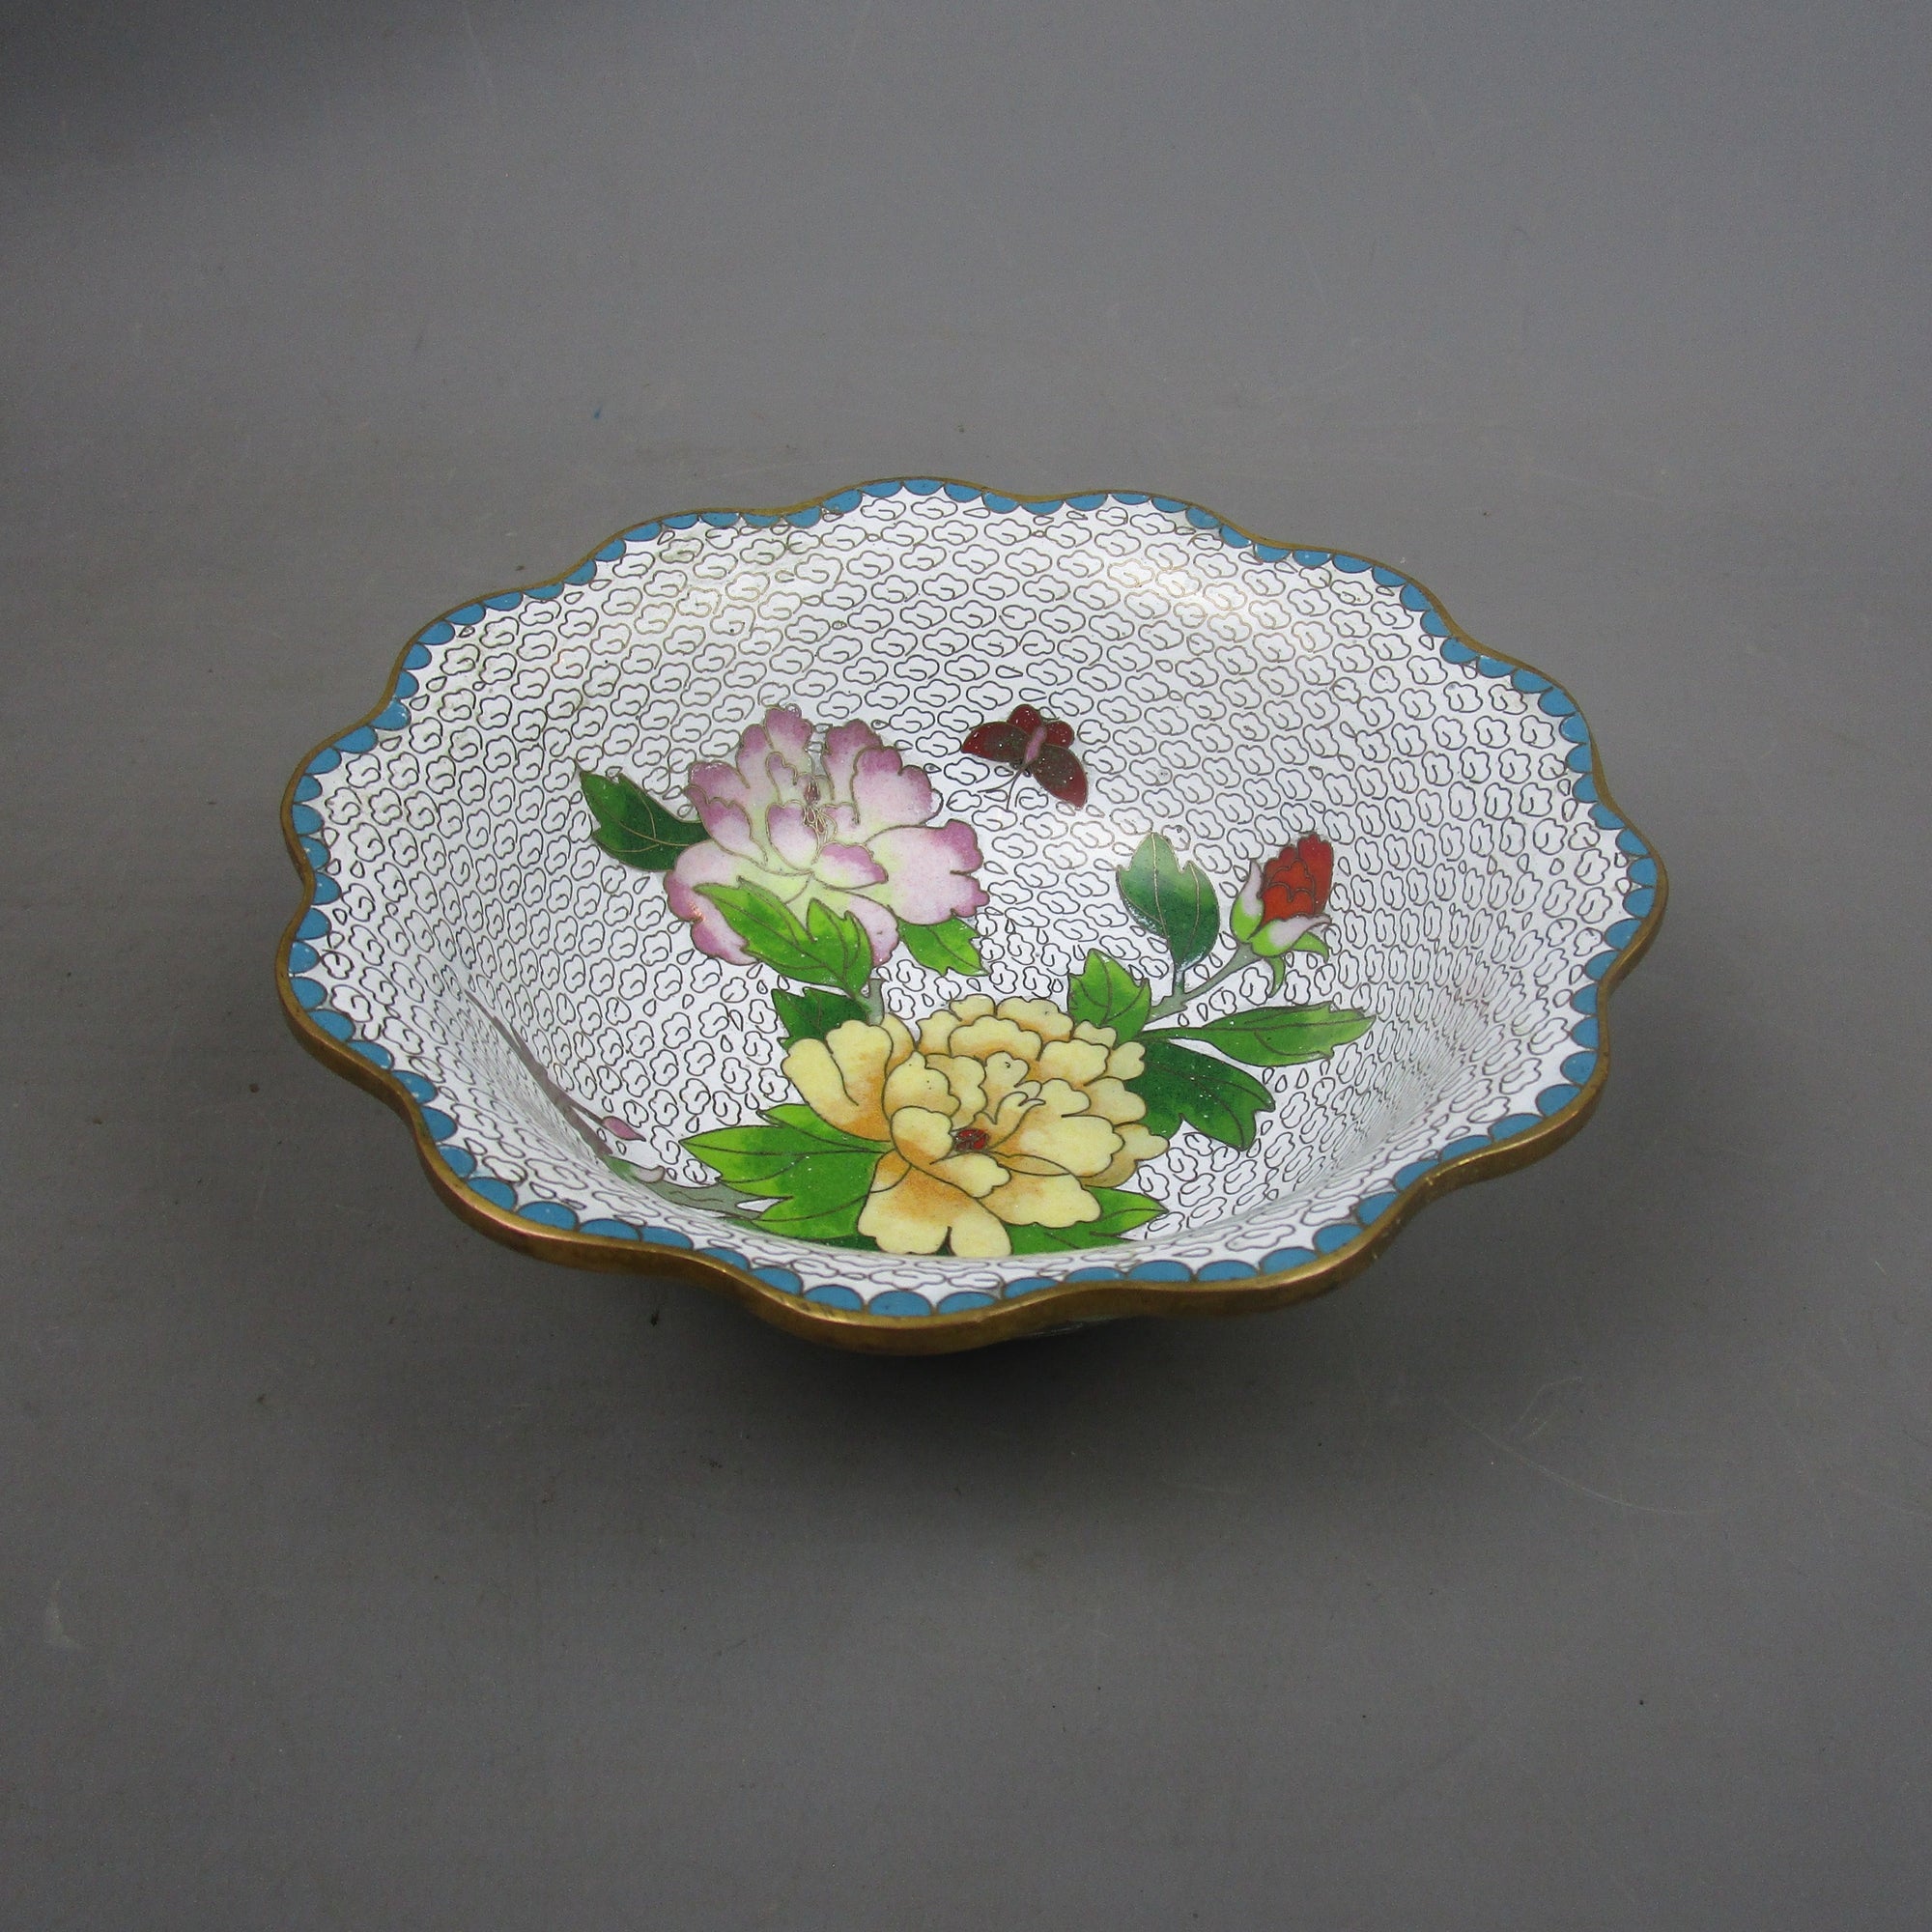 Scalloped Edge Chinese Cloisonné Floral Design Bowl Vintage c1960